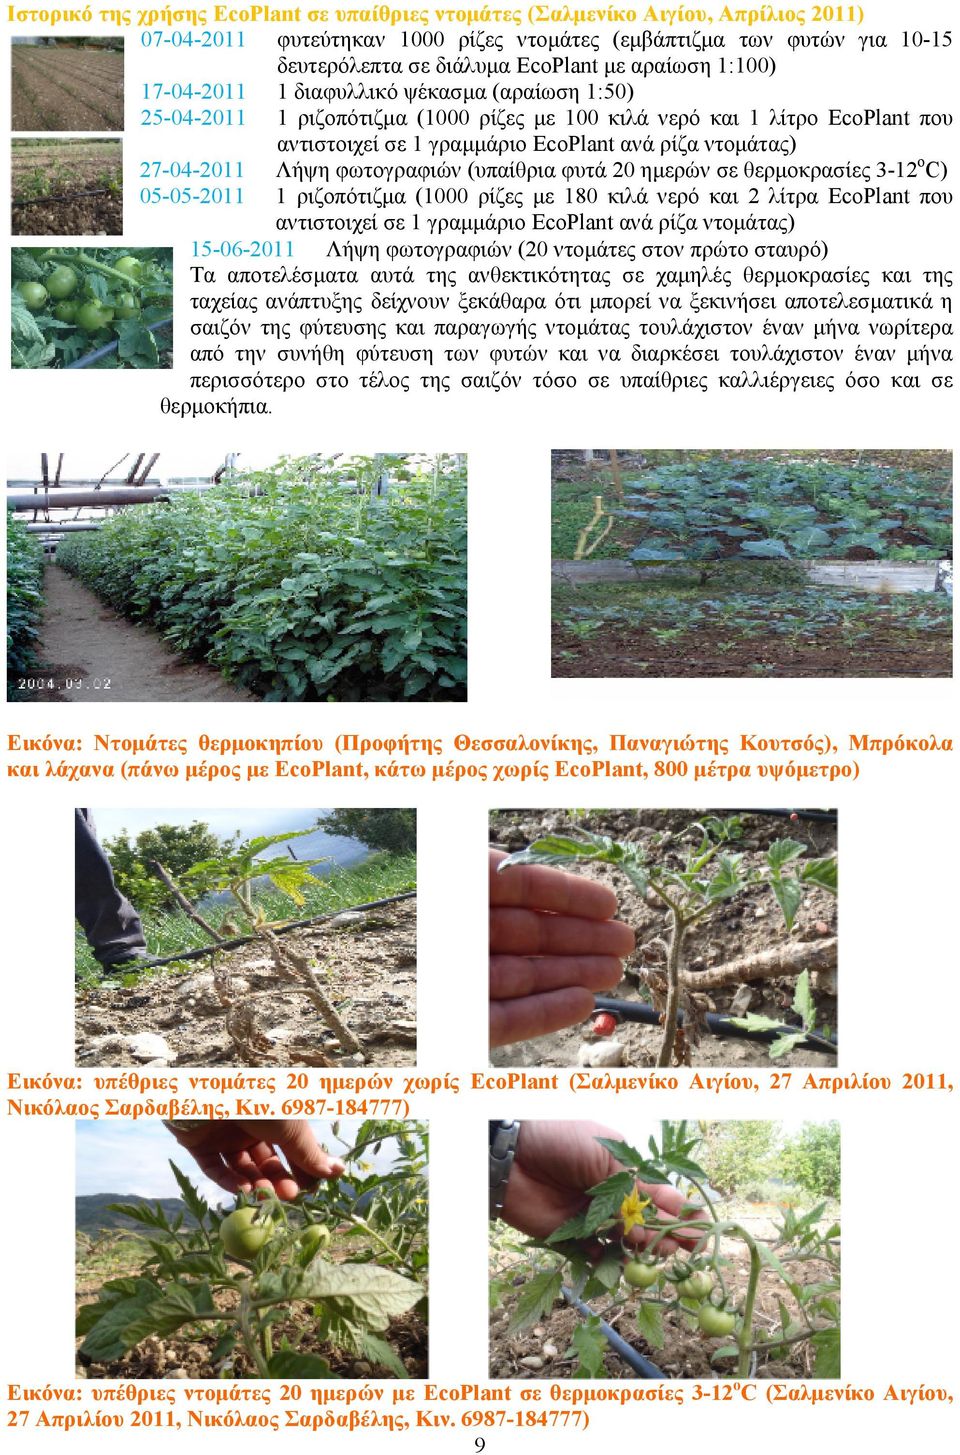 27-04-2011 Λήψη φωτογραφιών (υπαίθρια φυτά 20 ημερών σε θερμοκρασίες 3-12oC) 05-05-2011 1 ριζοπότιζμα (1000 ρίζες με 180 κιλά νερό και 2 λίτρα EcoPlant που αντιστοιχεί σε 1 γραμμάριο EcoPlant ανά